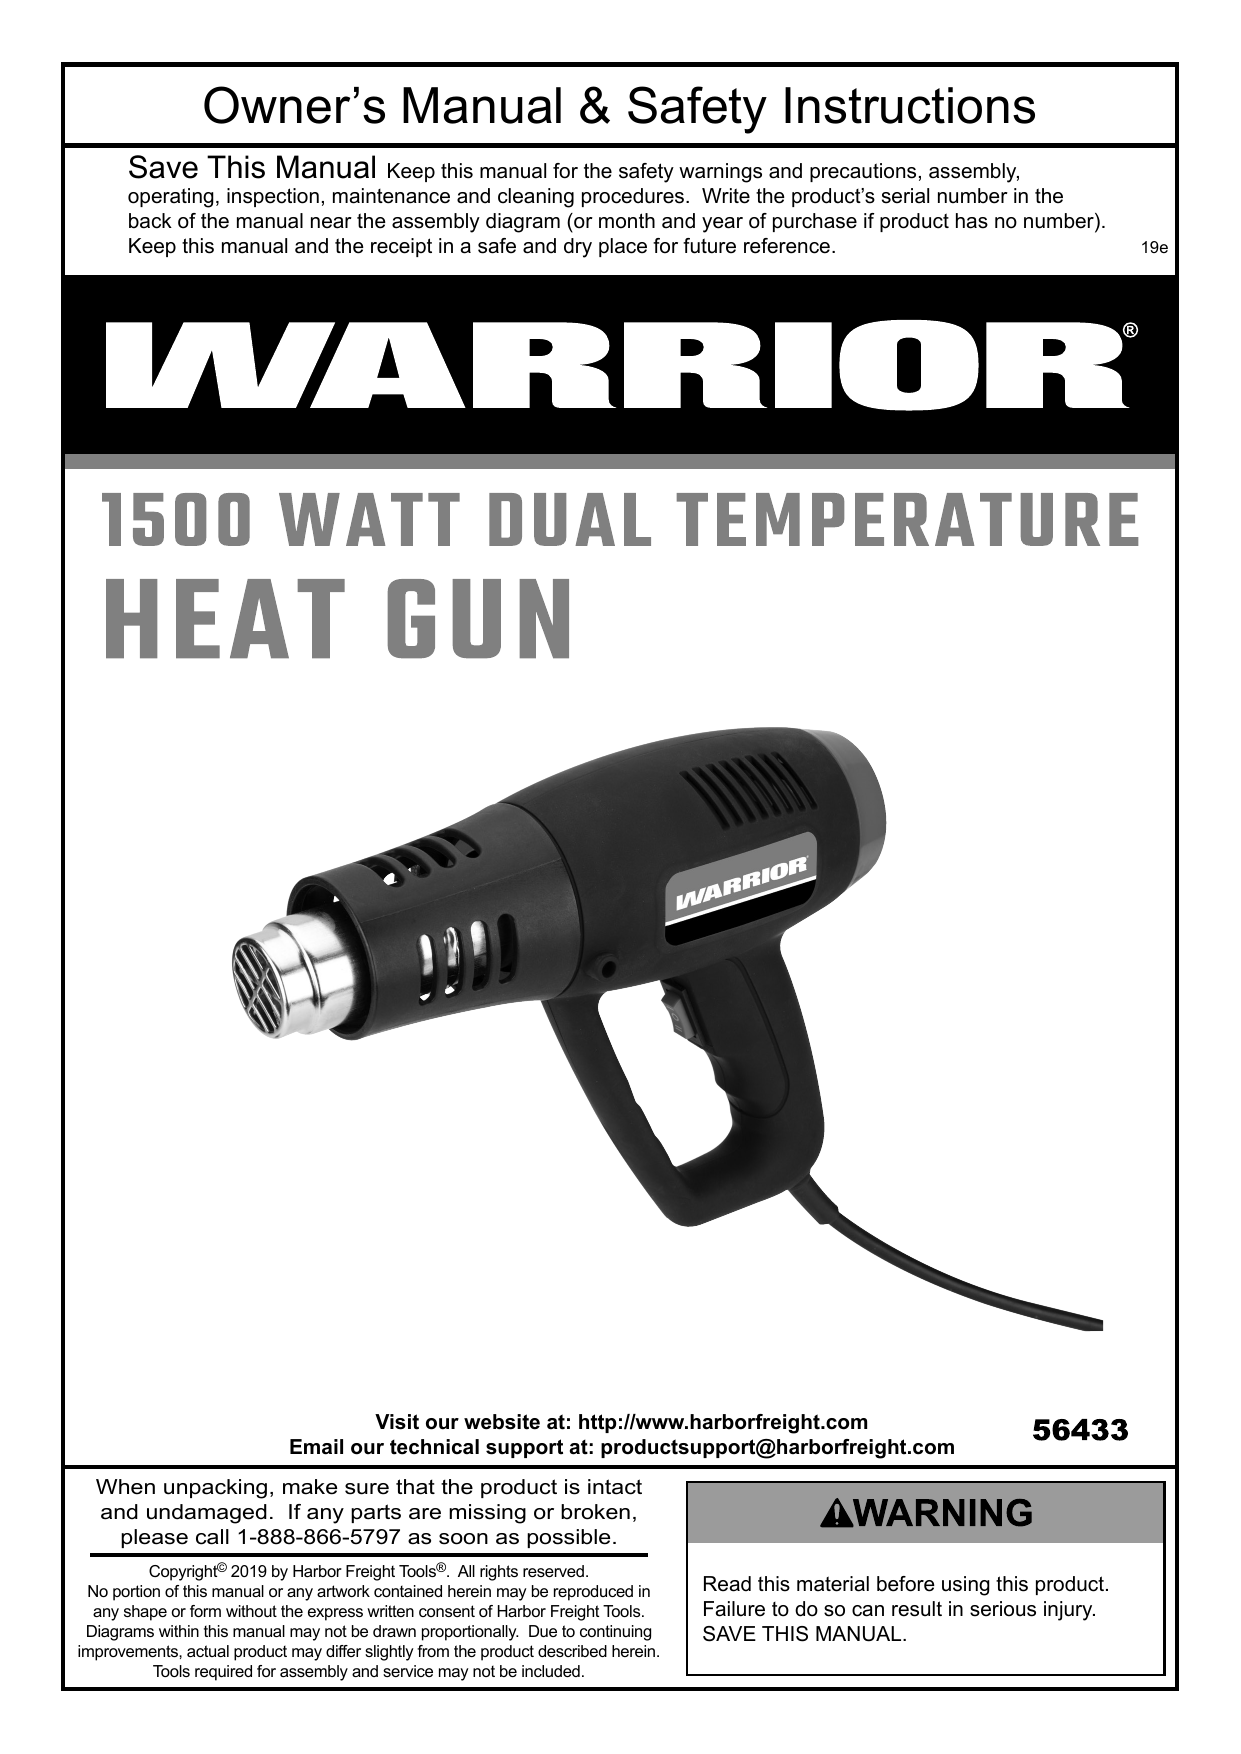 1500 Watt 11 Amp Dual Temperature Heat Gun